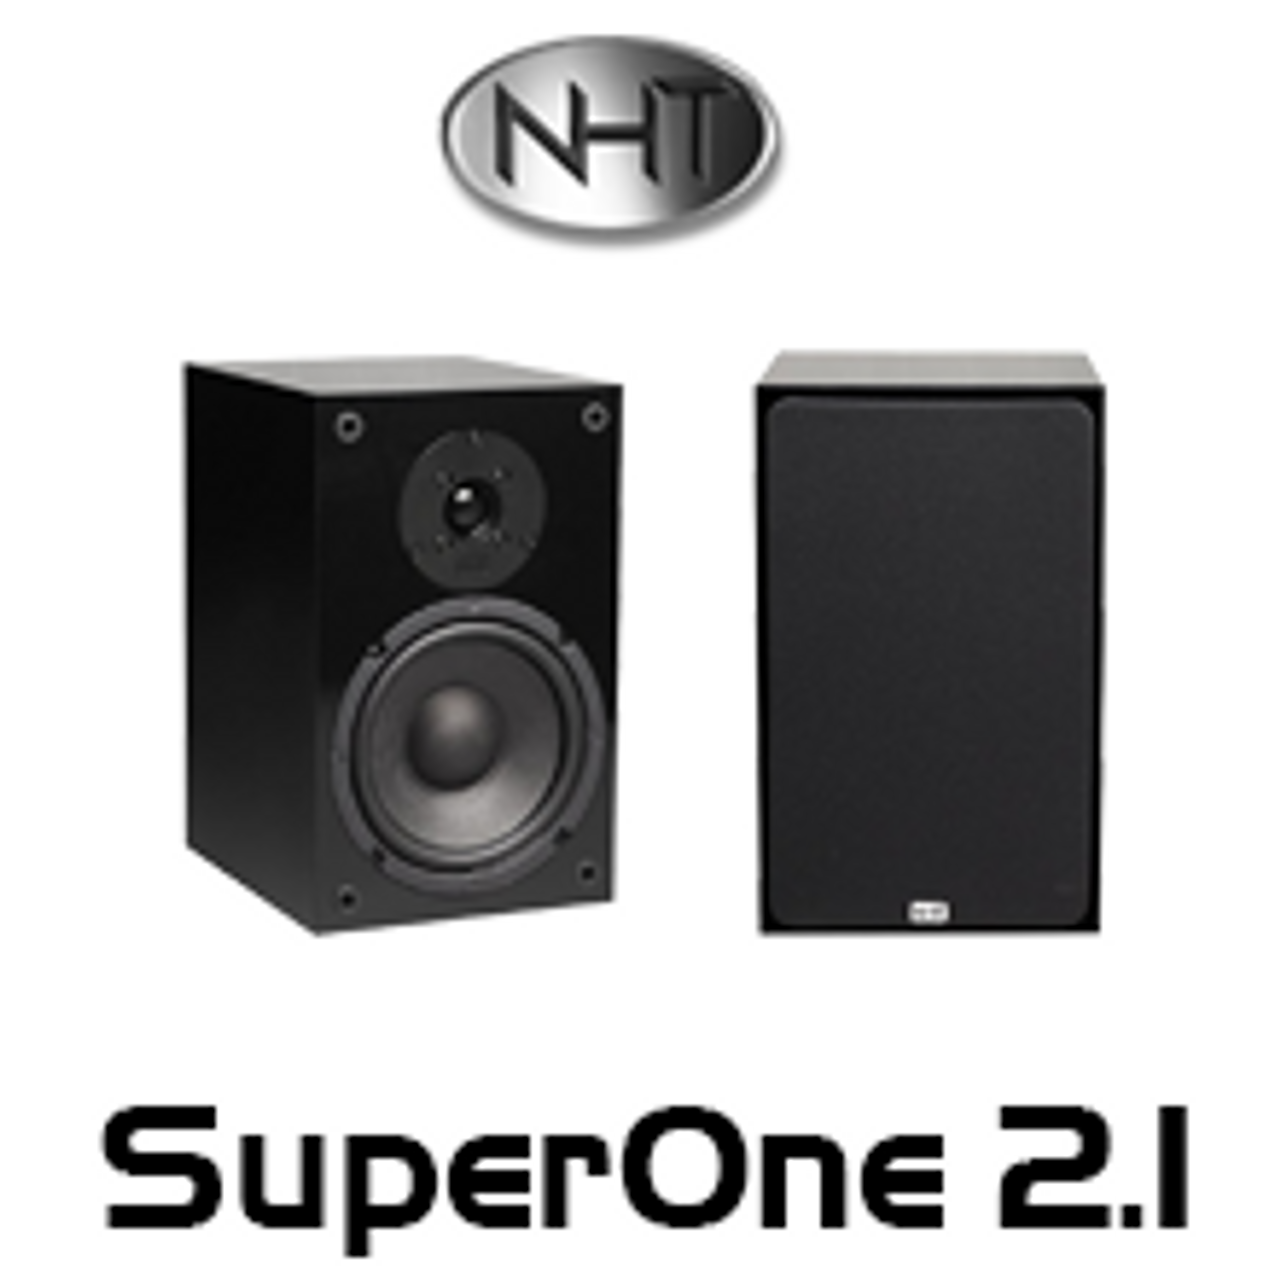 Nht Superone 2 1 6 5 Bookshelf Loudspeakers Av Australia Online